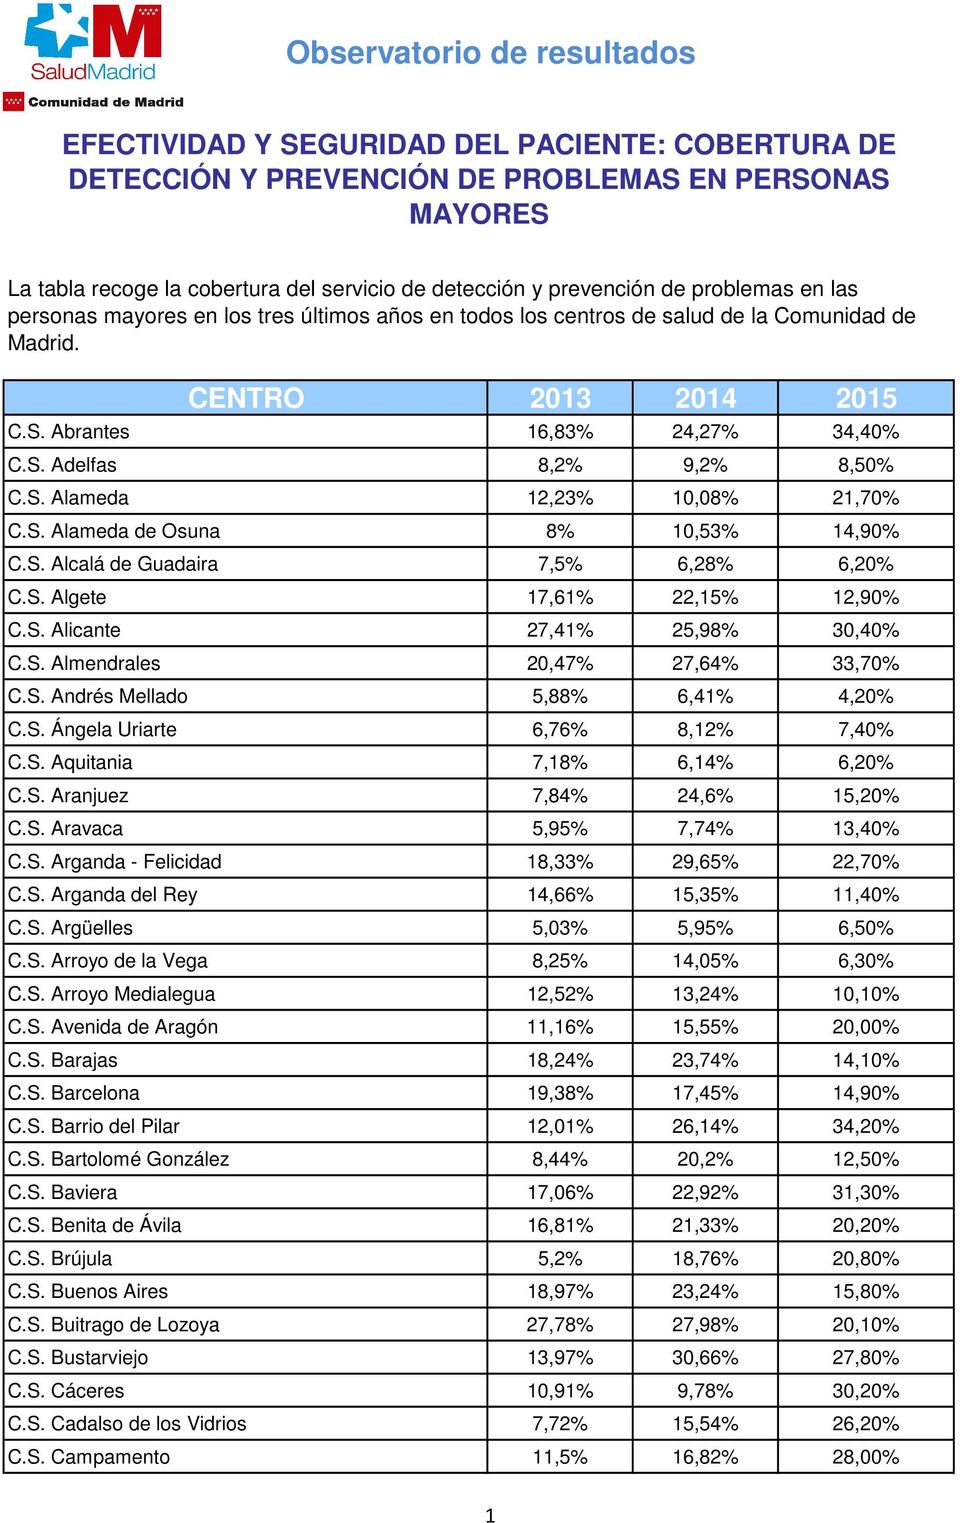 S. Aravaca 5,95% 7,74% 13,40% C.S. Arganda - Felicidad 18,33% 29,65% 22,70% C.S. Arganda del Rey 14,66% 15,35% 11,40% C.S. Argüelles 5,03% 5,95% 6,50% C.S. Arroyo de la Vega 8,25% 14,05% 6,30% C.S. Arroyo Medialegua 12,52% 13,24% 10,10% C.